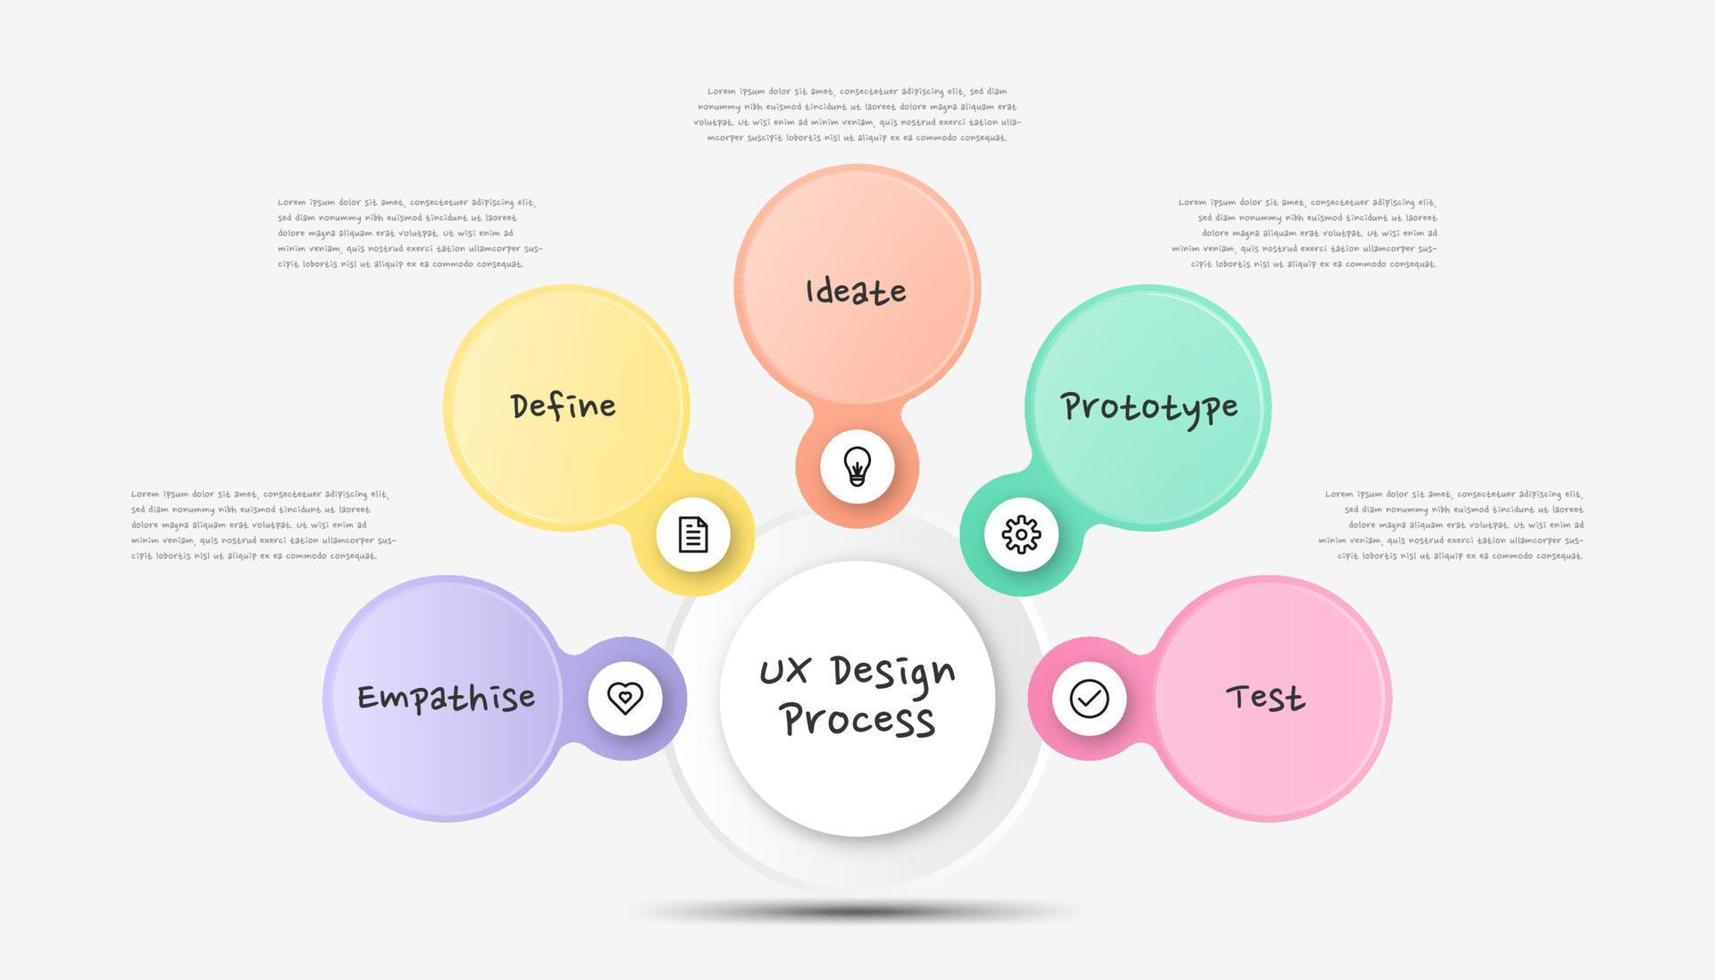 processo de design infográfico ux. modelo infográfico de processo moderno colorido. vetor